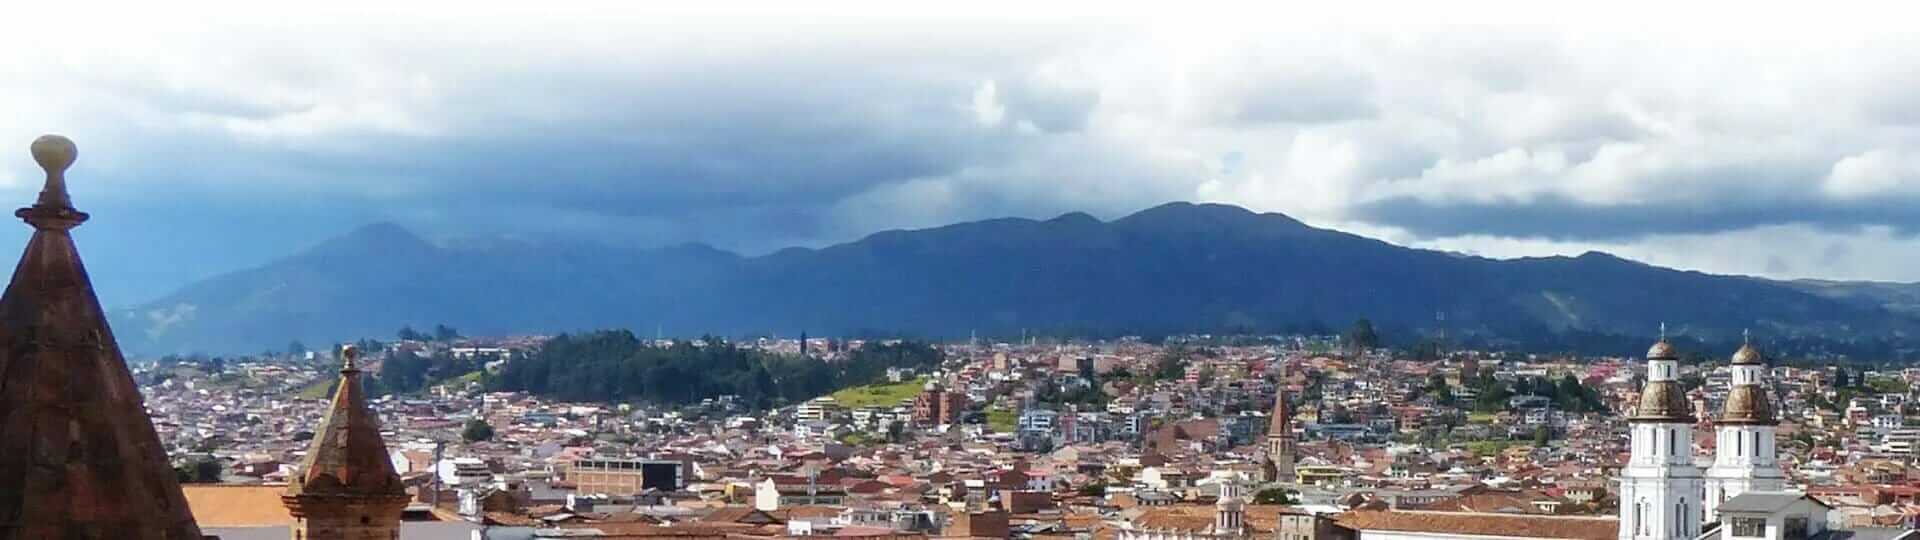 Cuenca-Dach-Draufsicht Ecuador